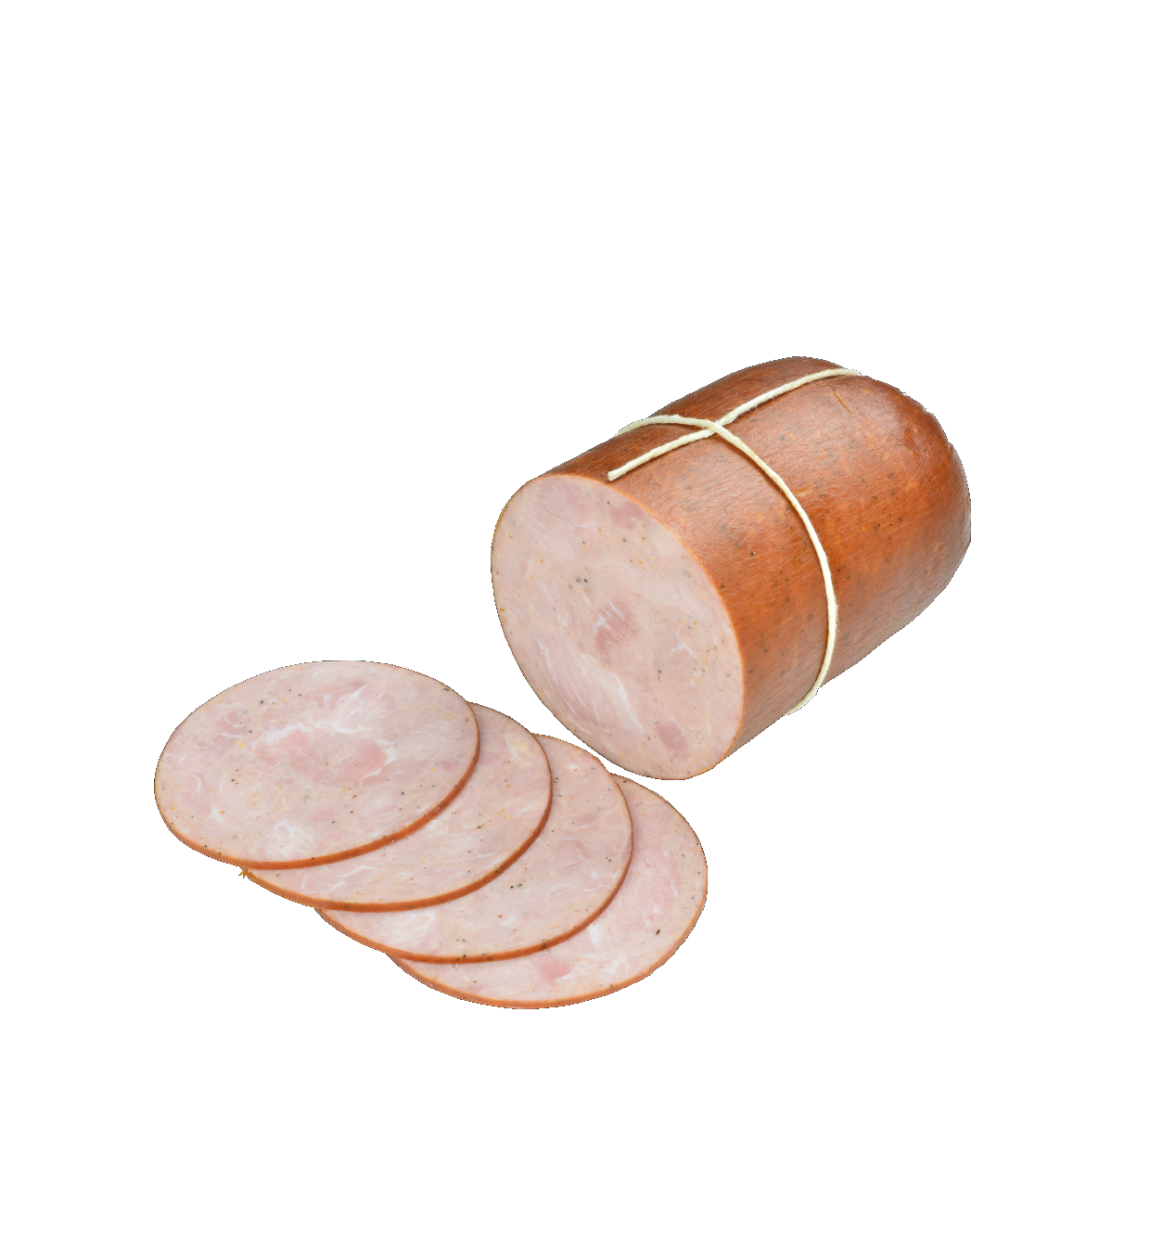 Produkt wieprzowy parzony wędzony z połączonych kawałków mięsa.